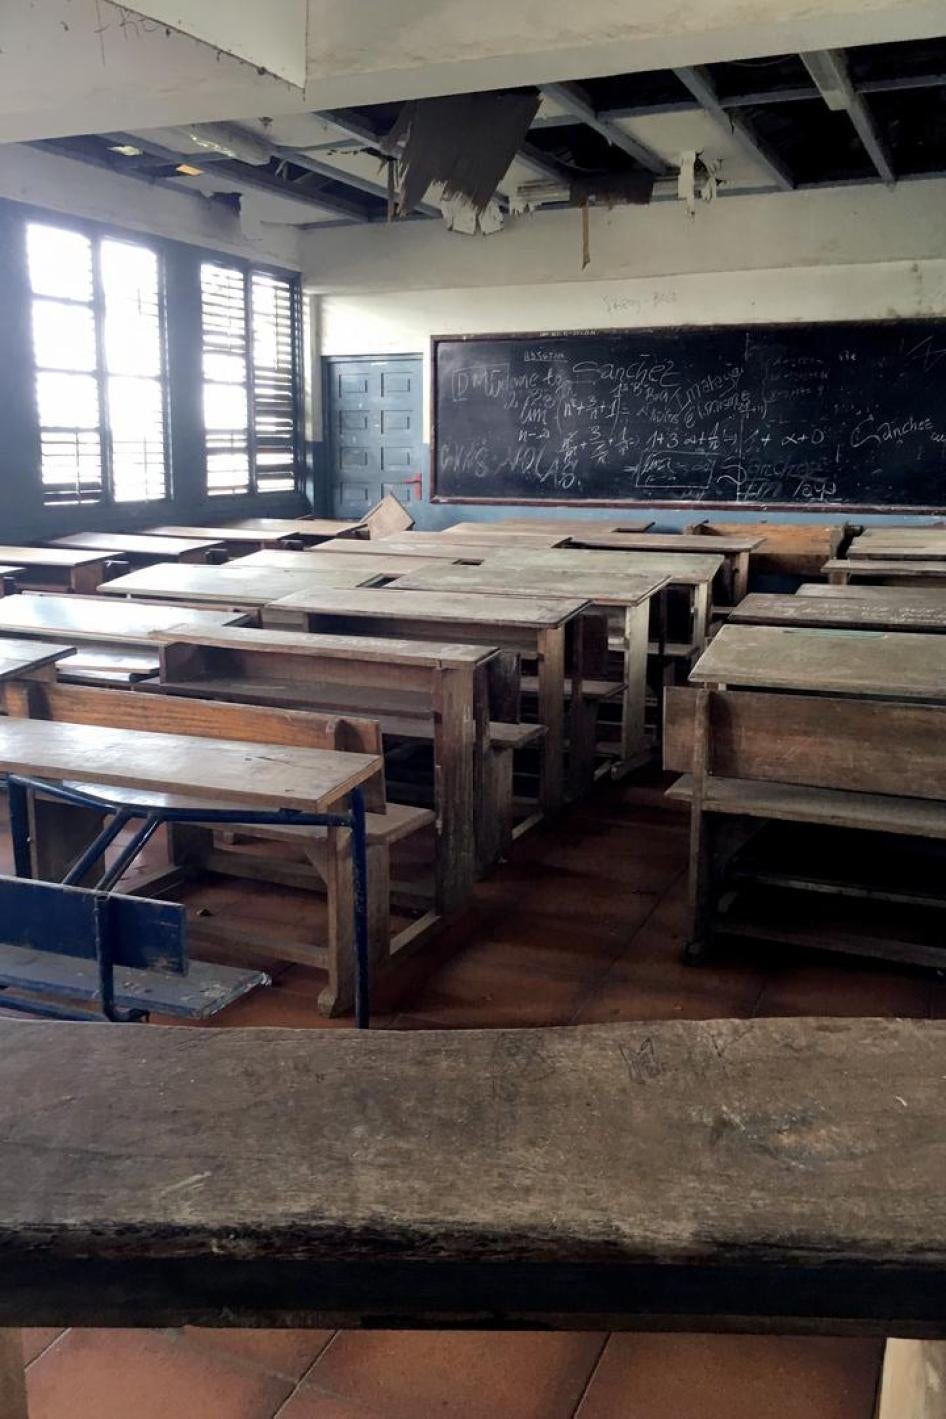 Salle de classe dans un lycée public urbain, en Guinée equatoriale. Chaque classe comportait environ 40 bancs doubles